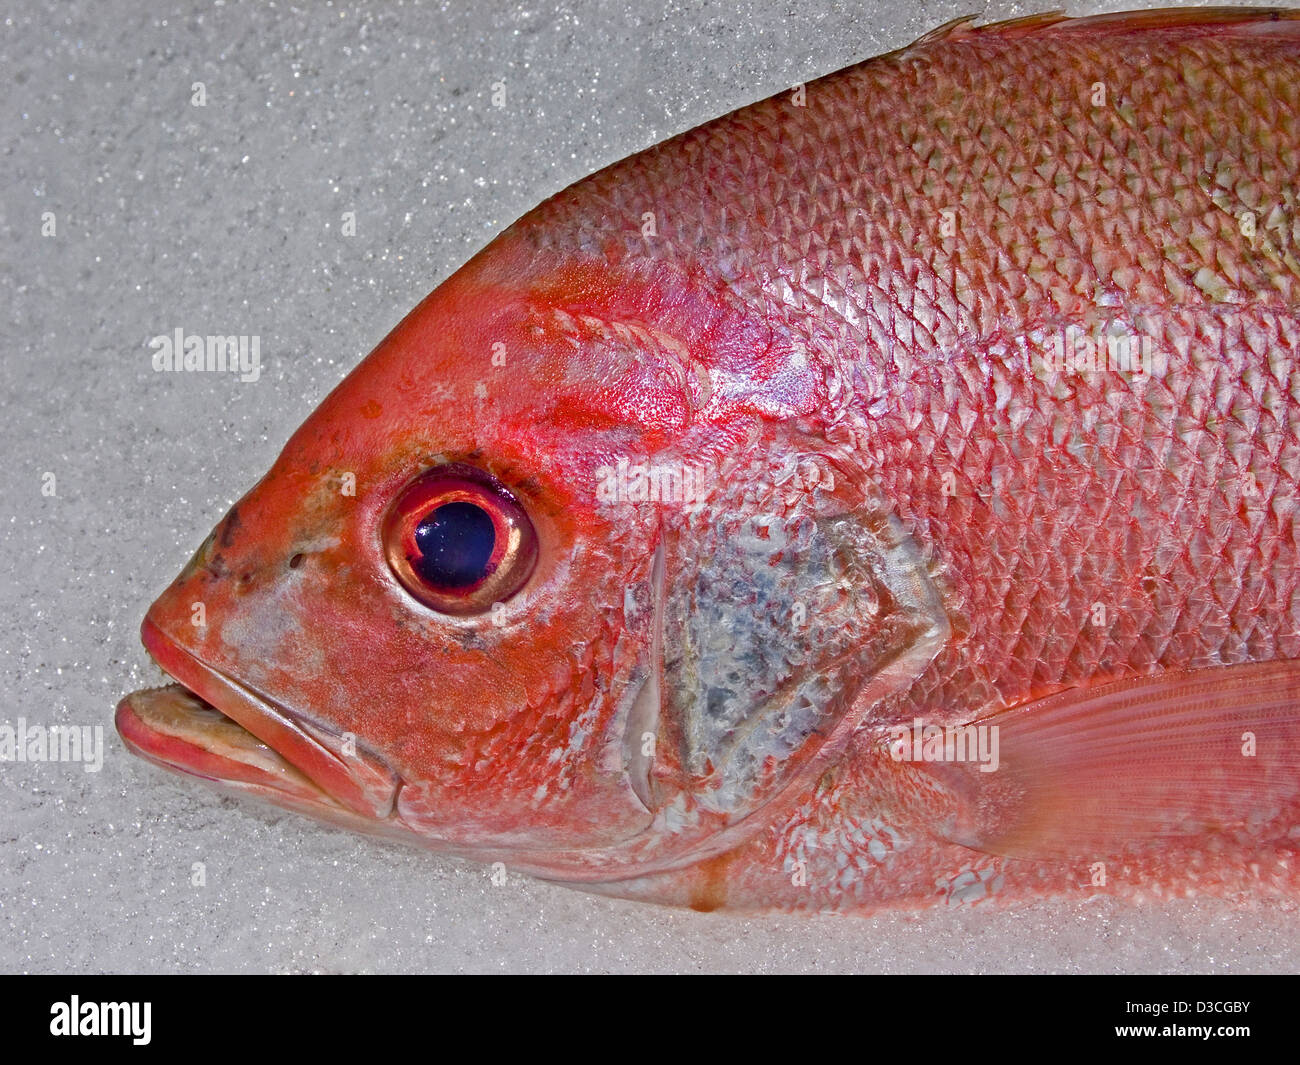 Gesicht von leuchtend roter Fisch - australische Snapper - auf Eis in einem Supermarkt Kühlschrank display Stockfoto